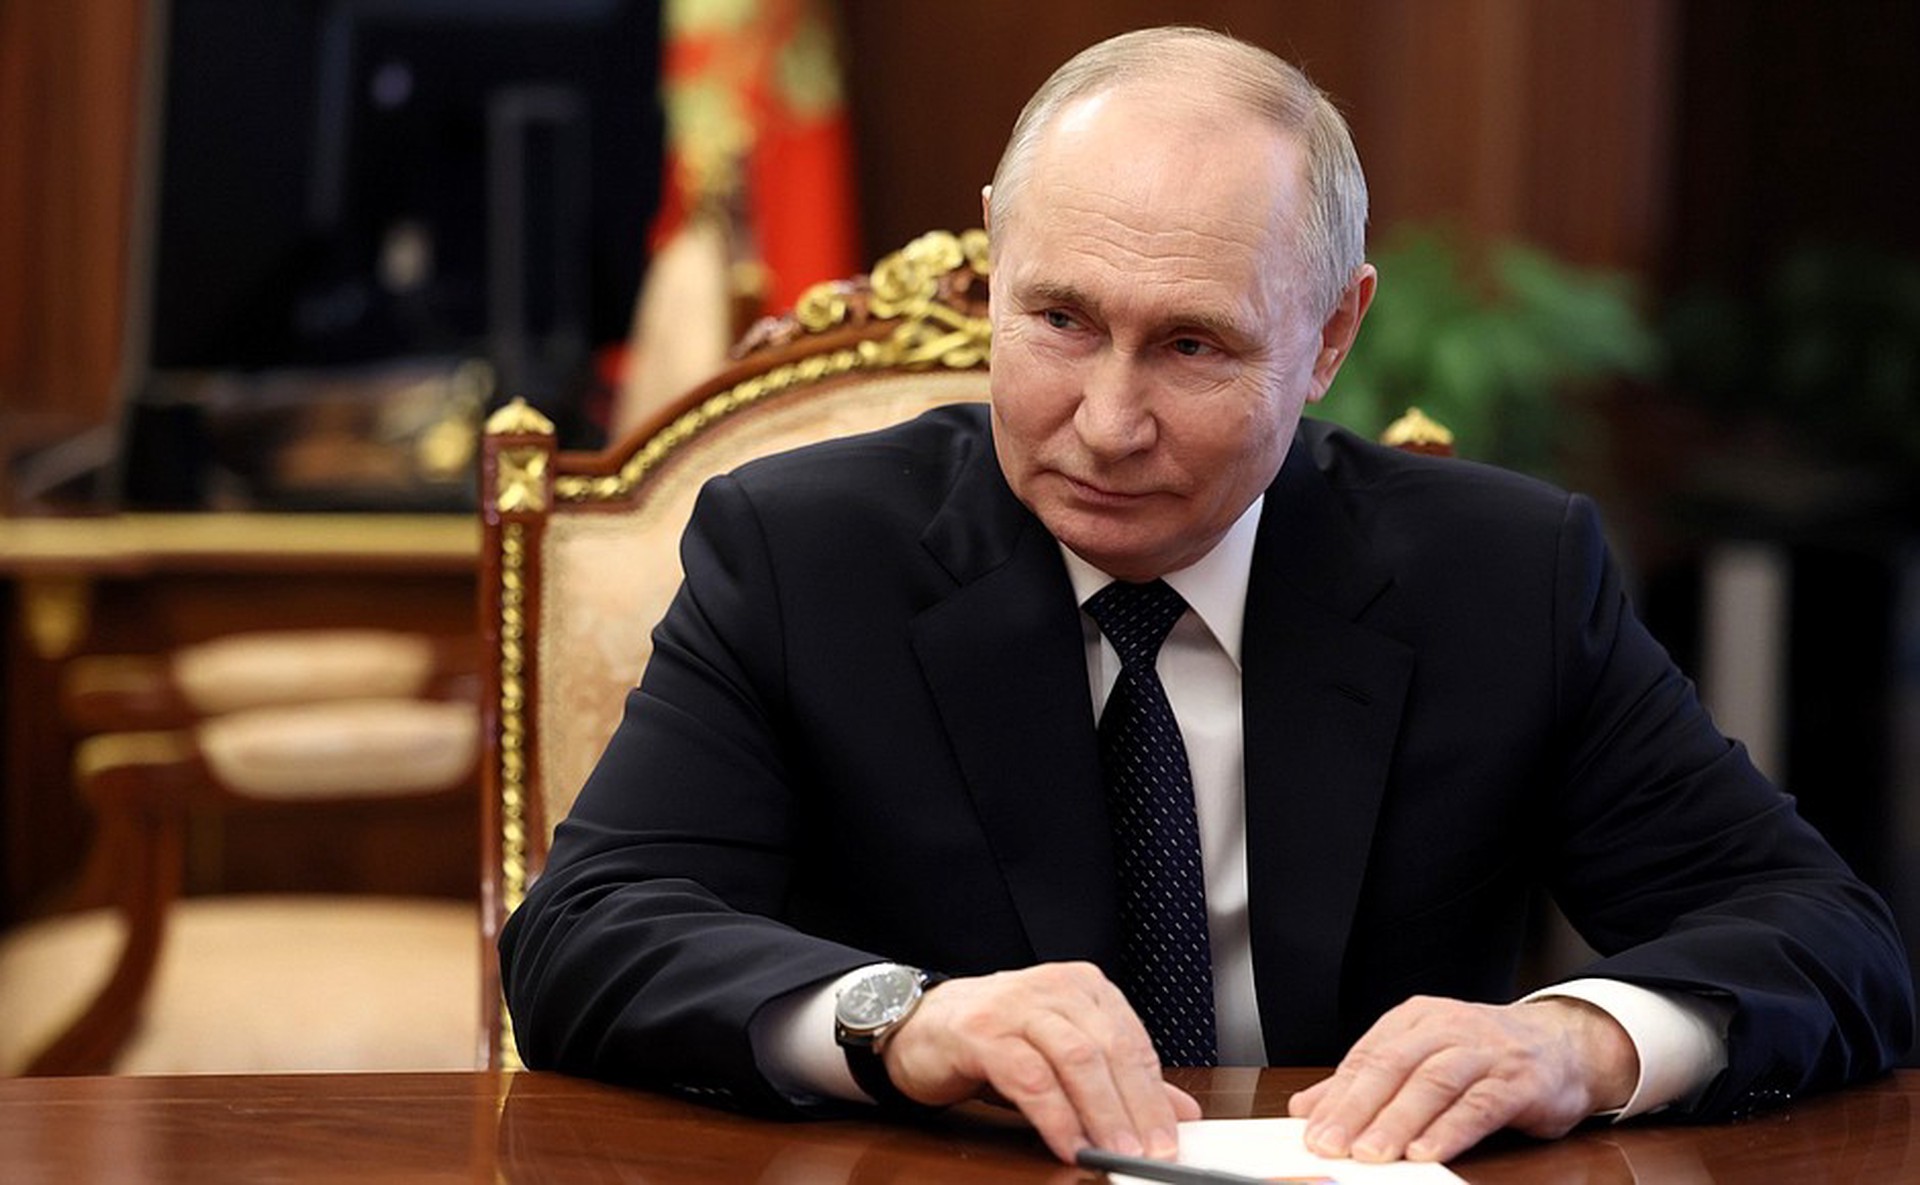 Стано: Приглашение на инаугурацию Путина получено, но решение по участию ещё не принято